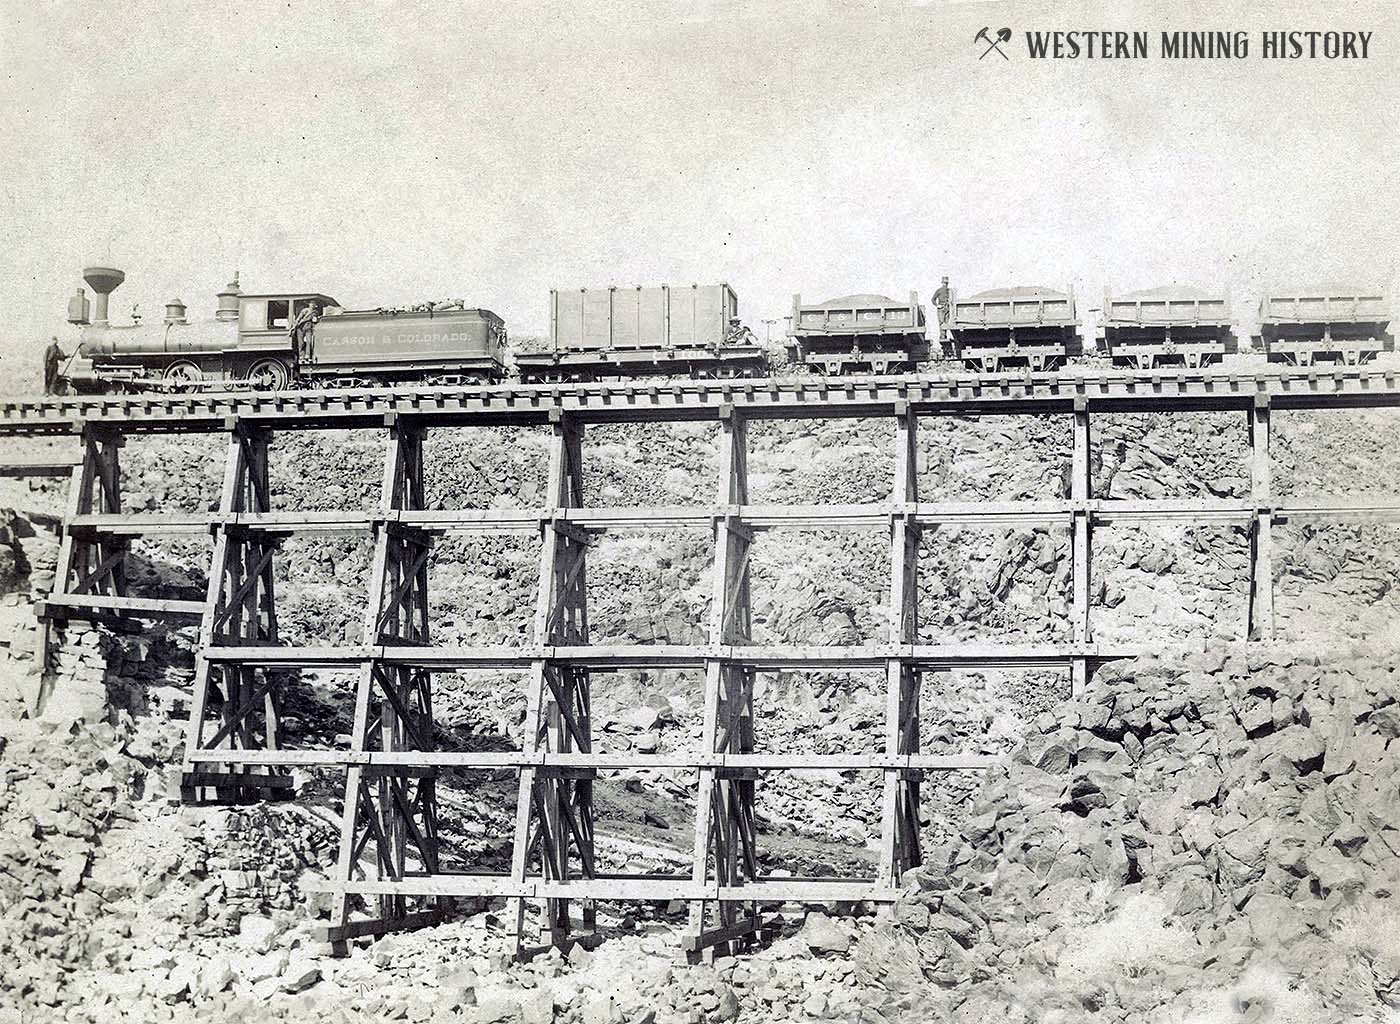  Carson and Colorado ore train on Candelaria trestle ca. 1880s